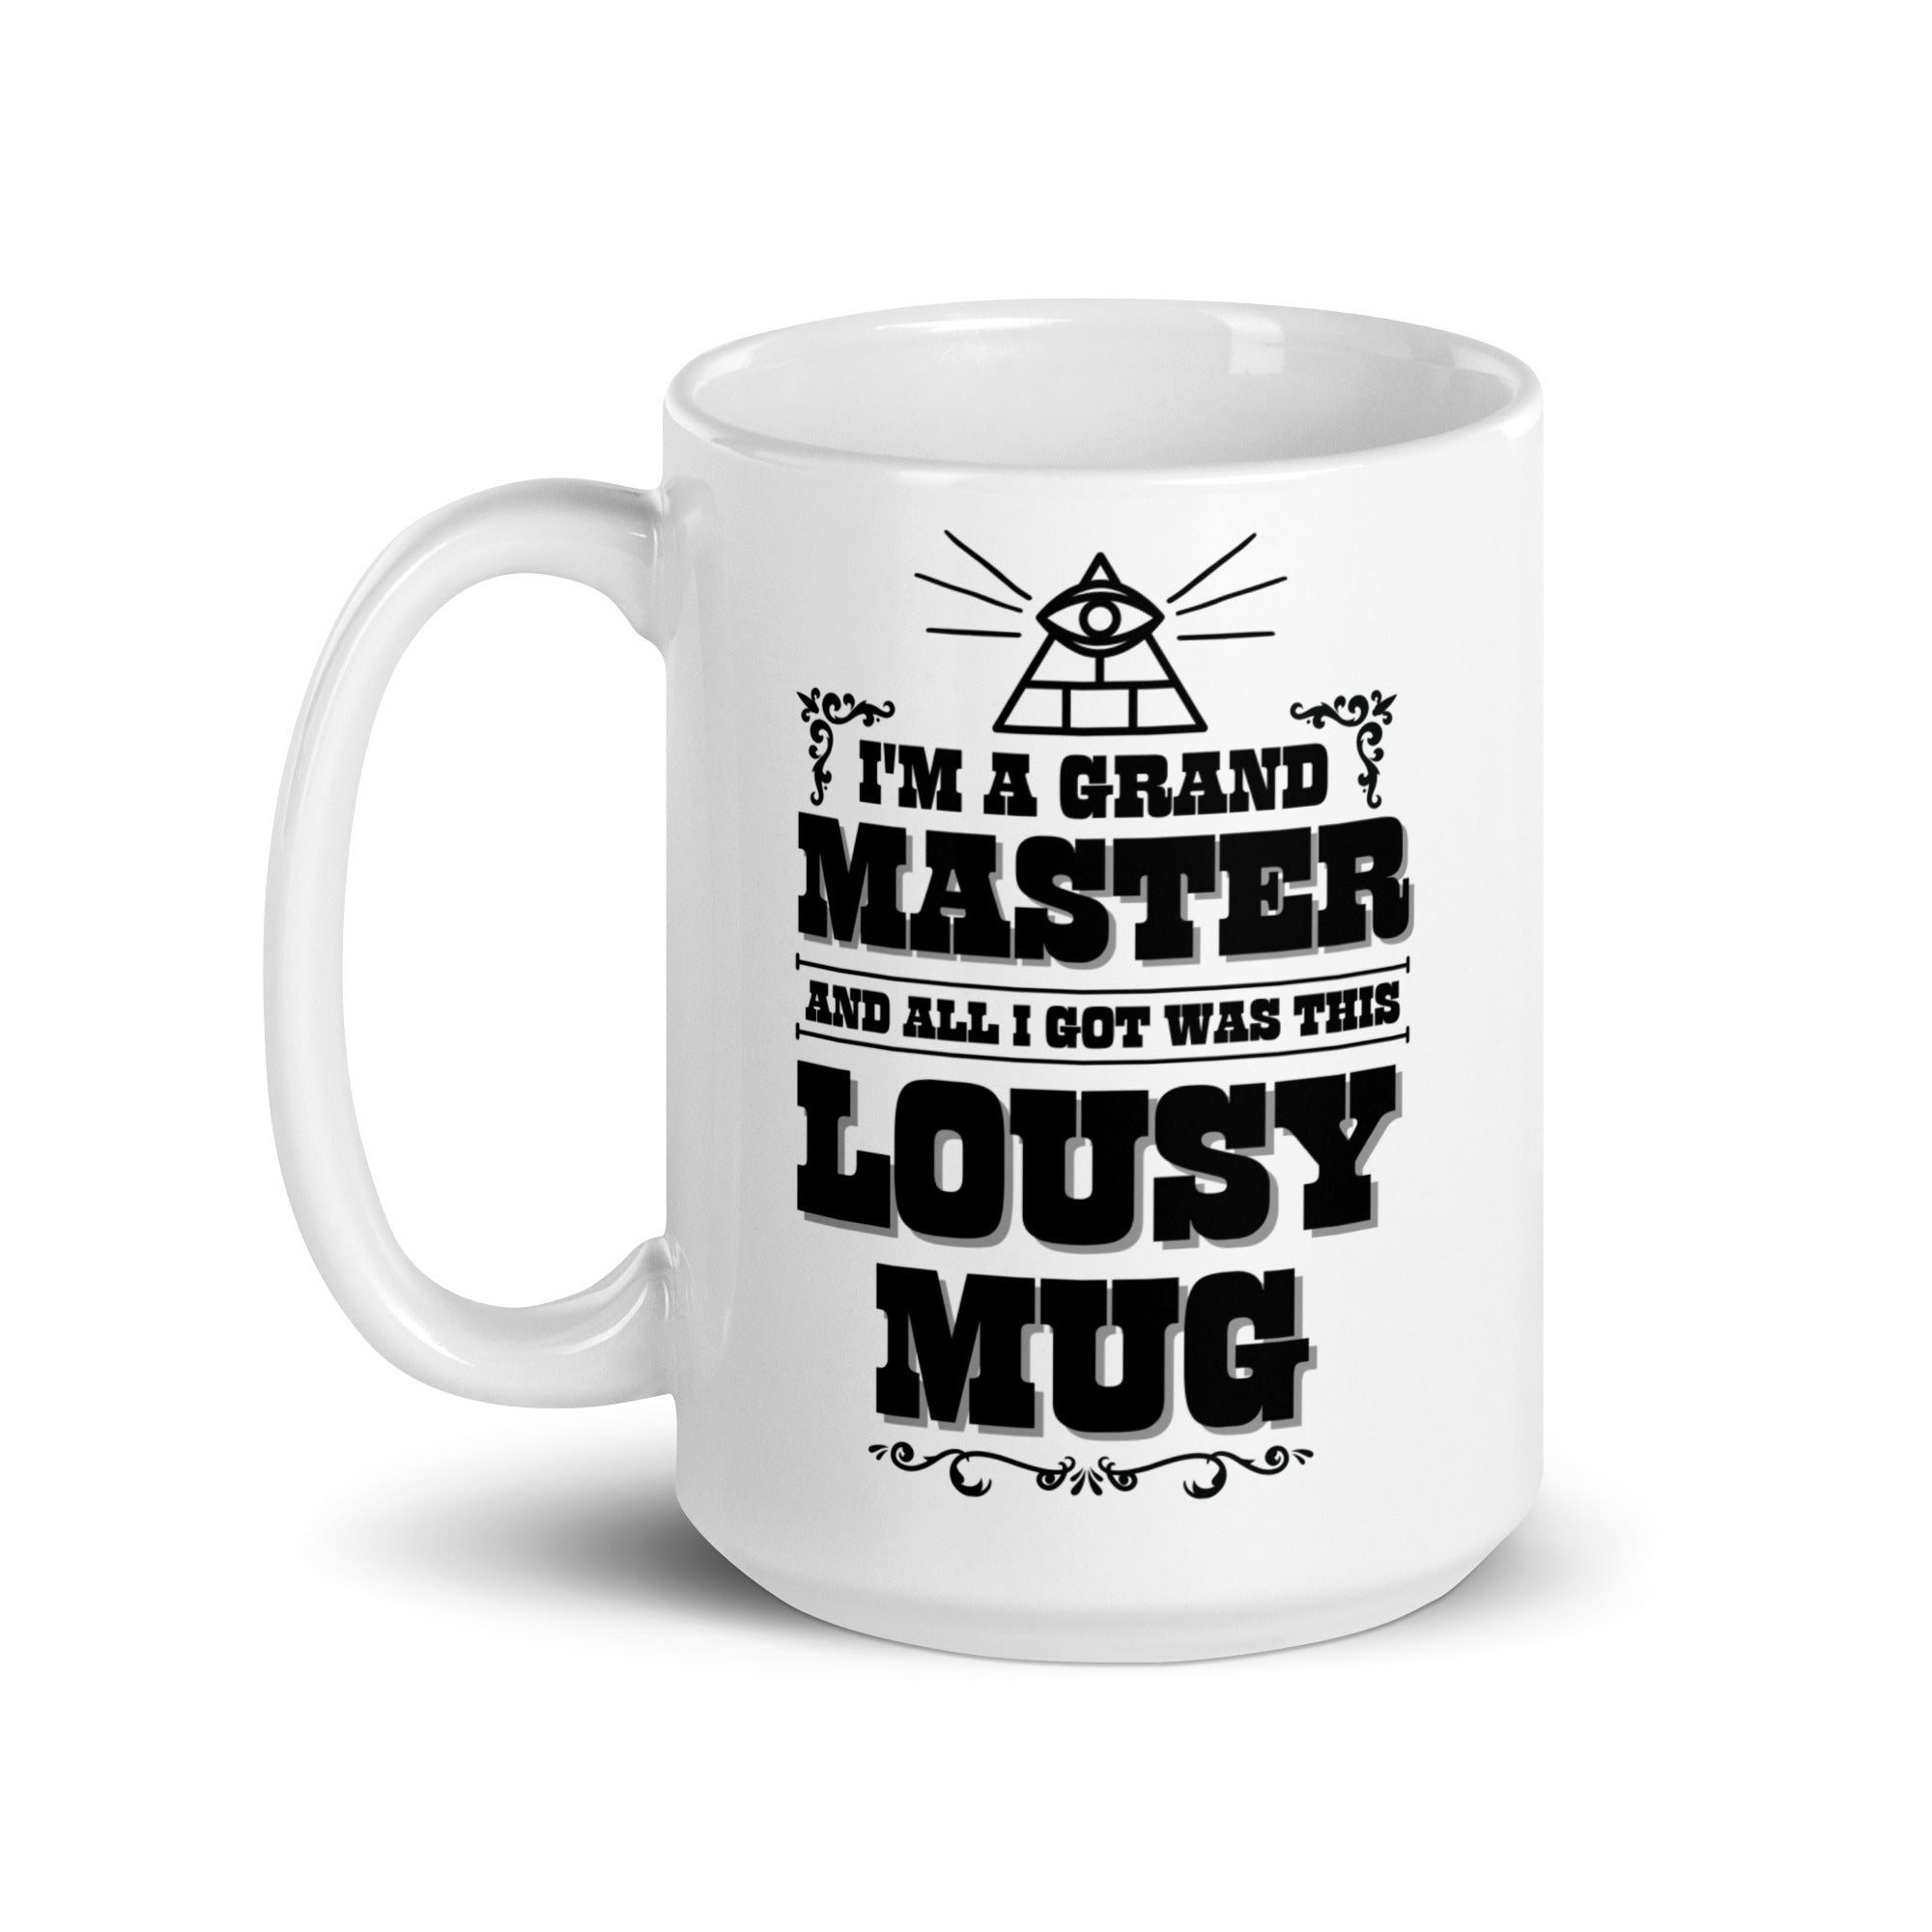 I'm a Grand Master mug